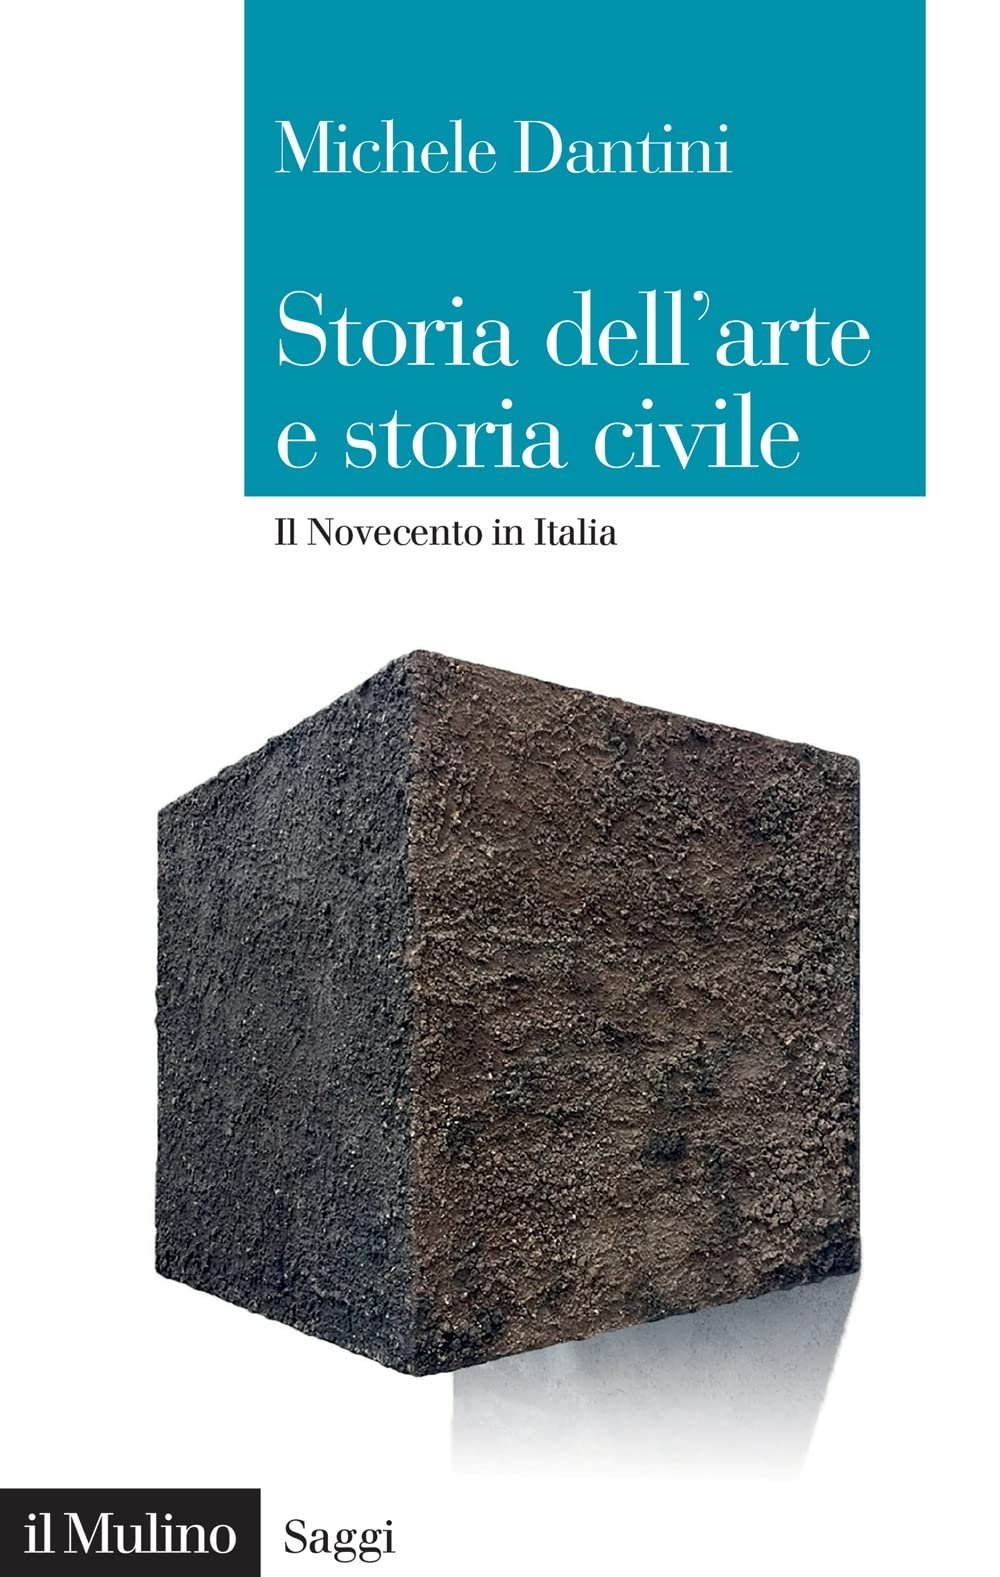 Michele Dantini ‒ Storia dell’arte e storia civile. Il Novecento in Italia (il Mulino, Bologna 2022)